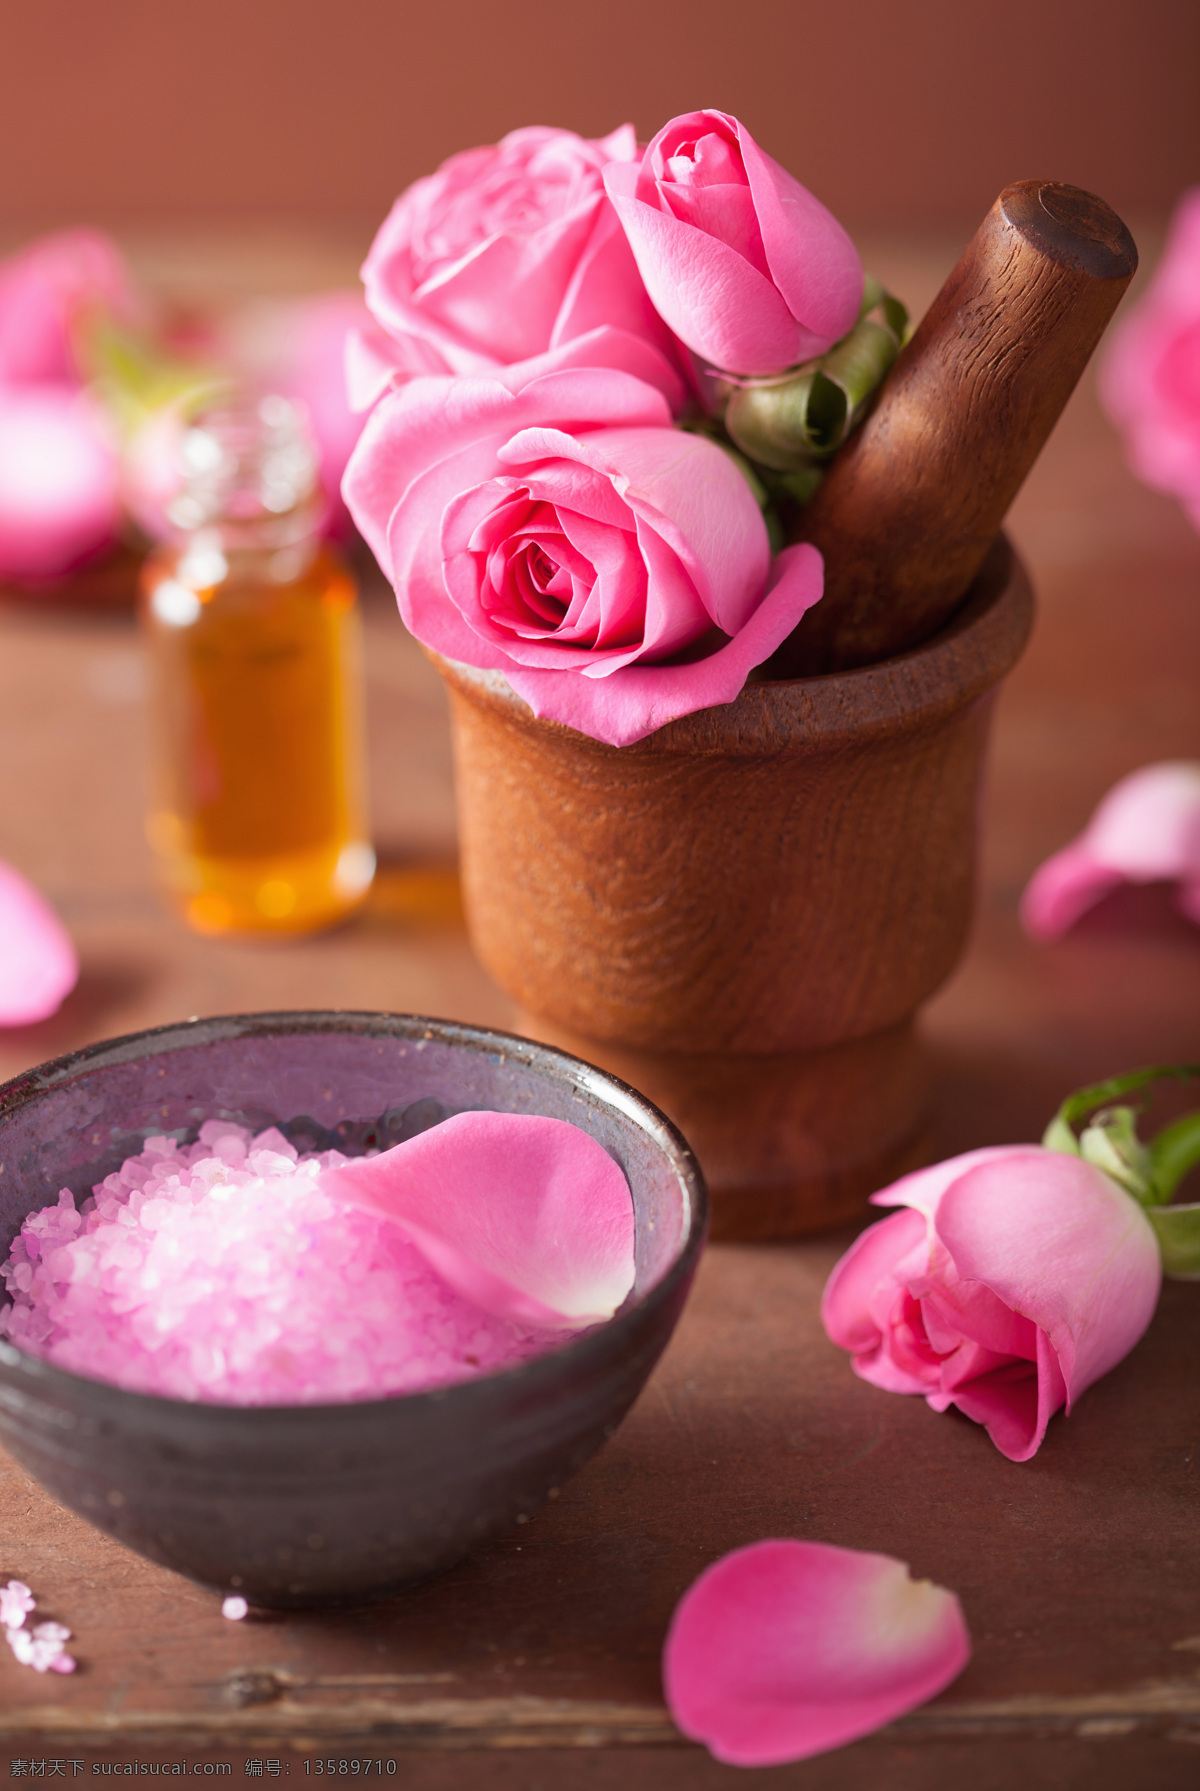 粉色 玫瑰花 浴盐 spa spa用品 鲜花 精油 其他类别 生活百科